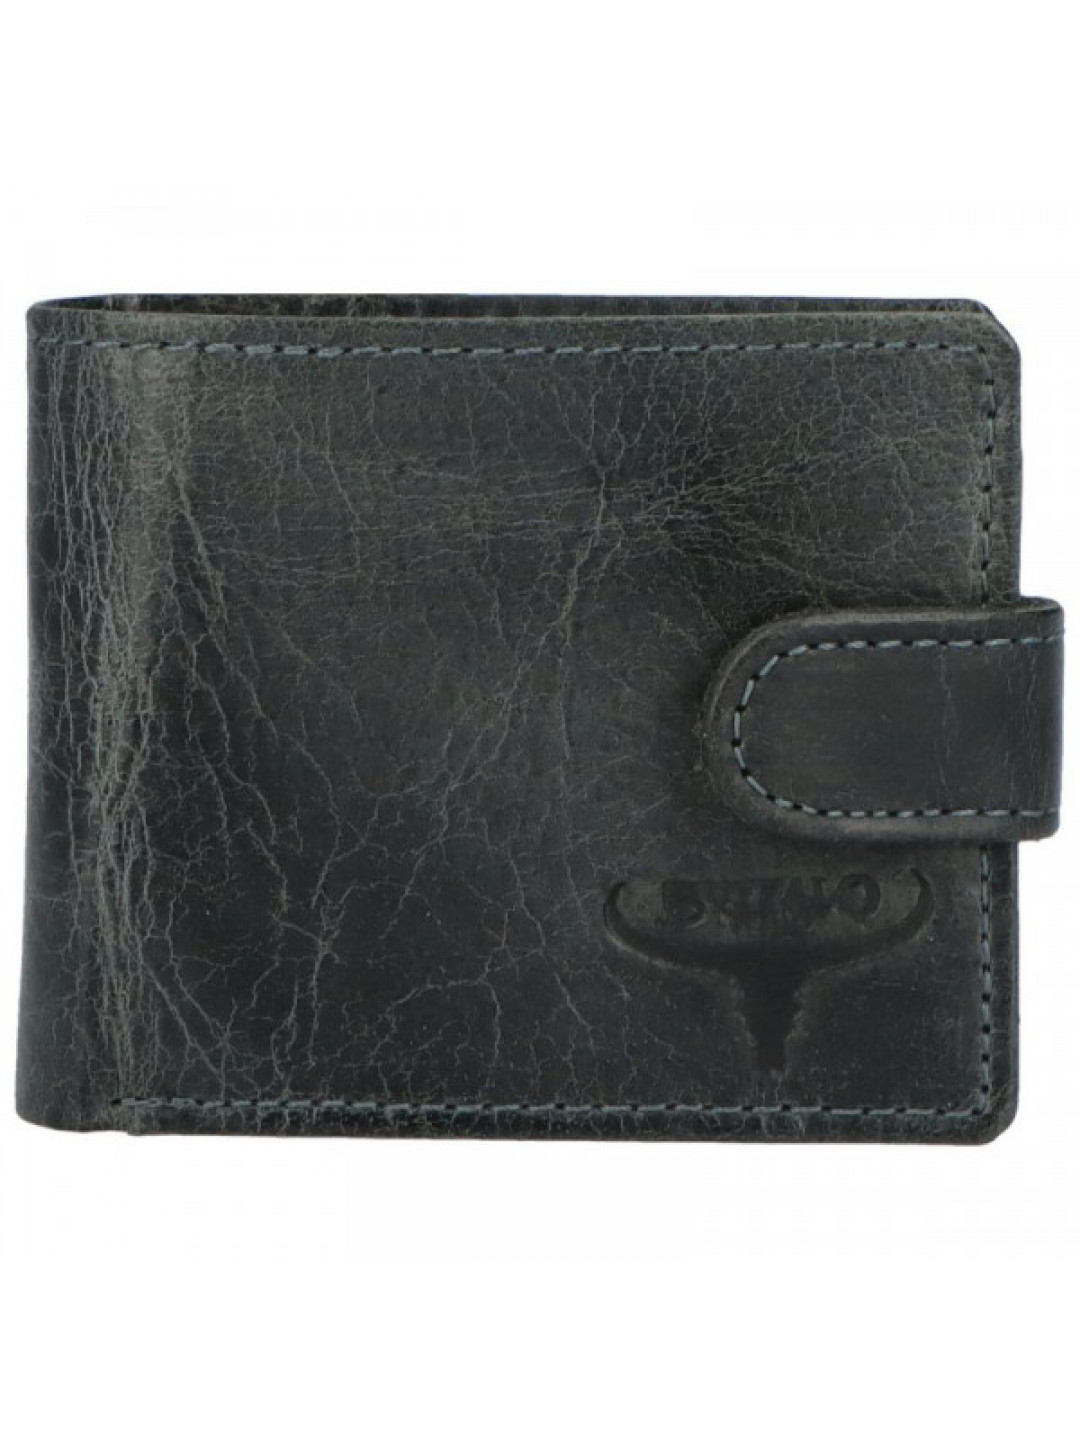 Trendová pánská menší kožená peněženka Drupo černá